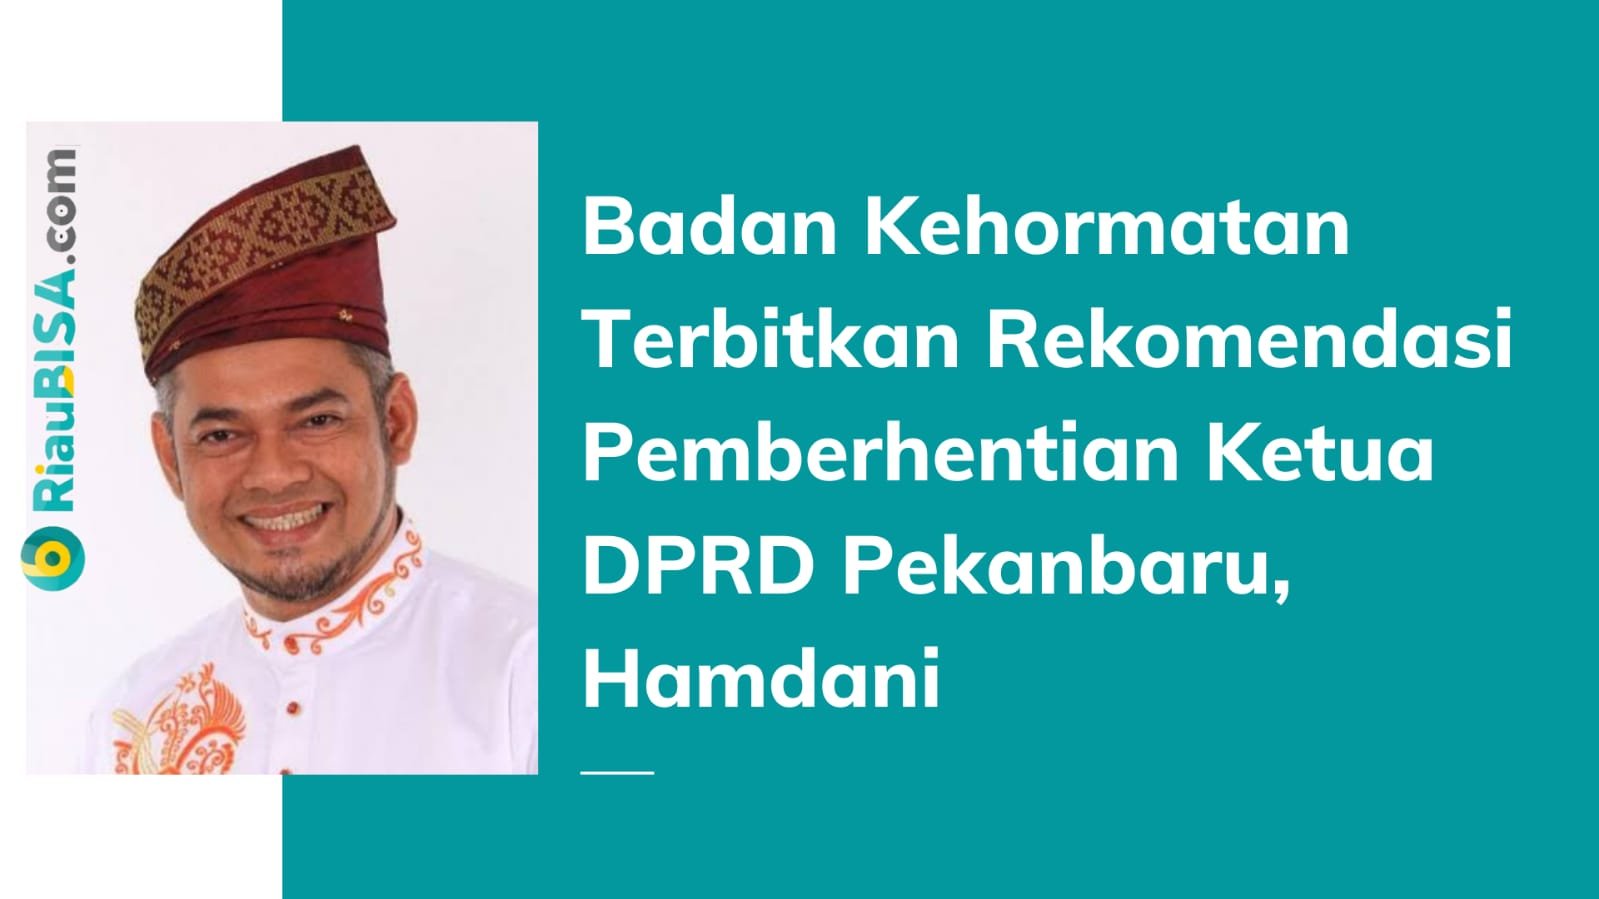 Surat Pemberhentian Ketua DPRD Pekanbaru Hamdani Sudah Dikirim ke Gubernur Riau